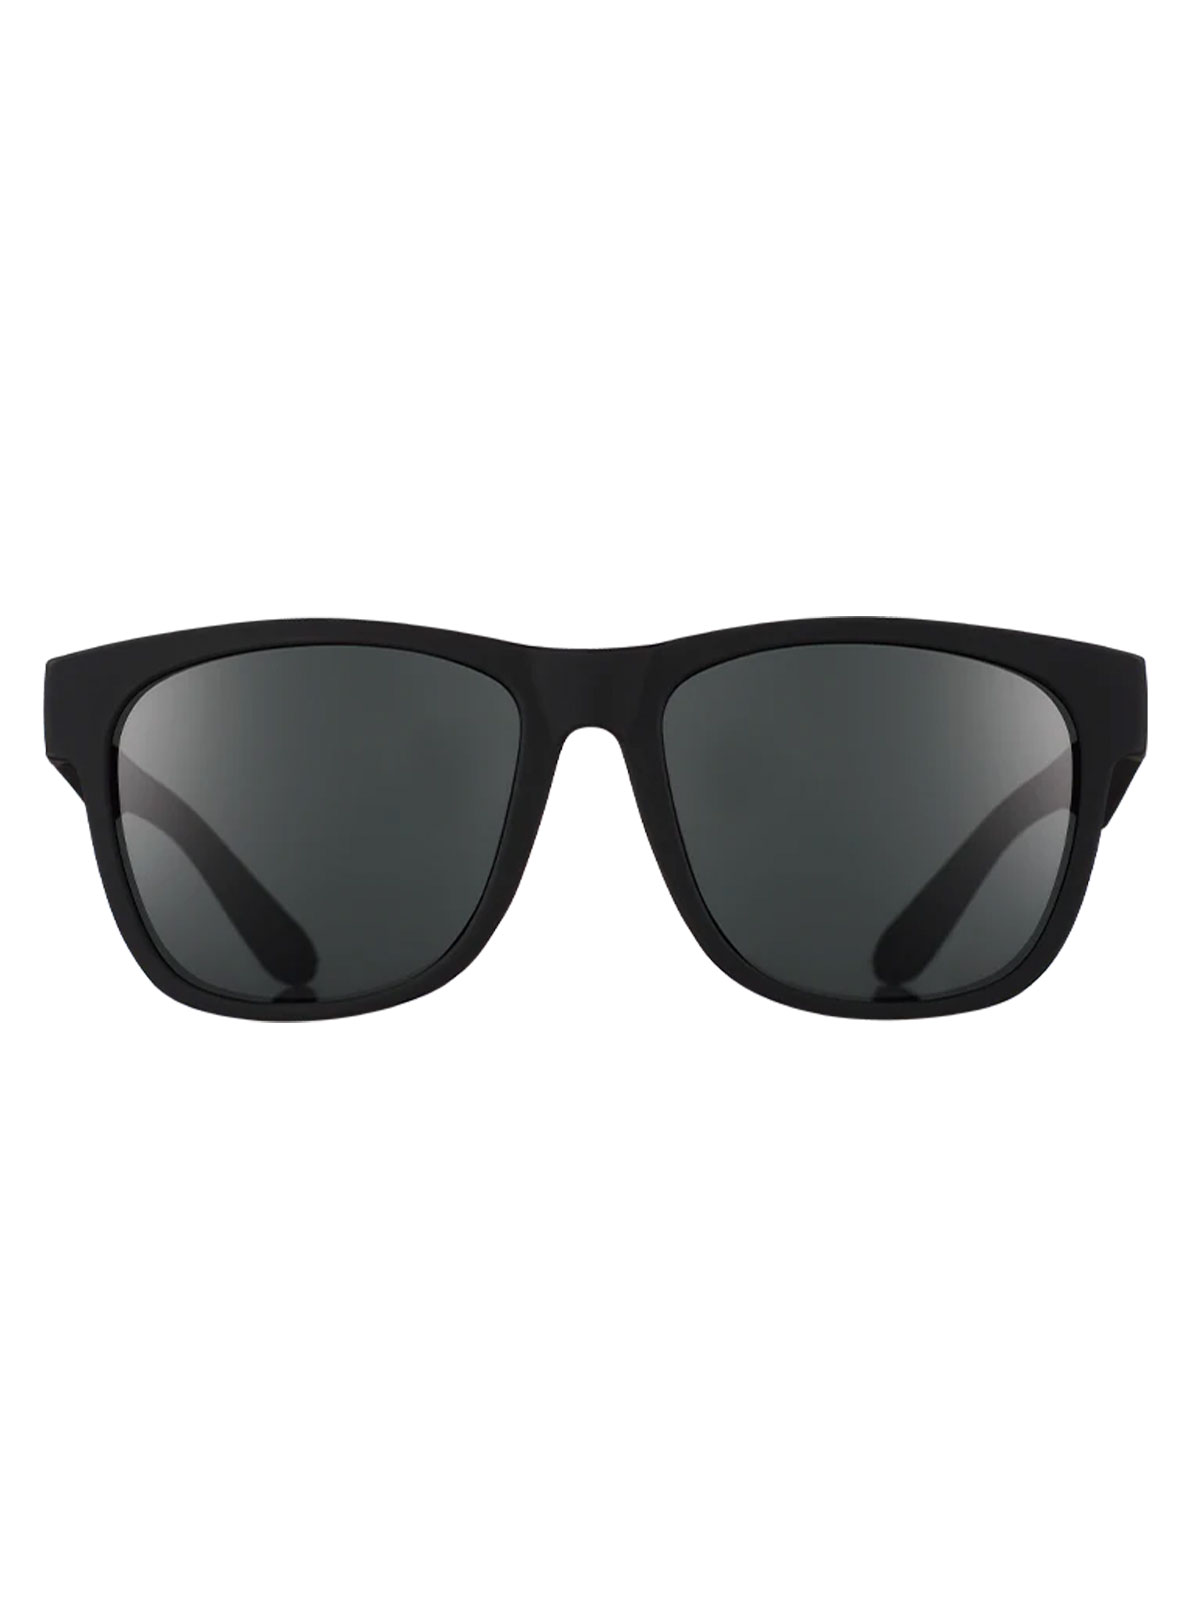 The BFG - Hooked on Onyx solbriller